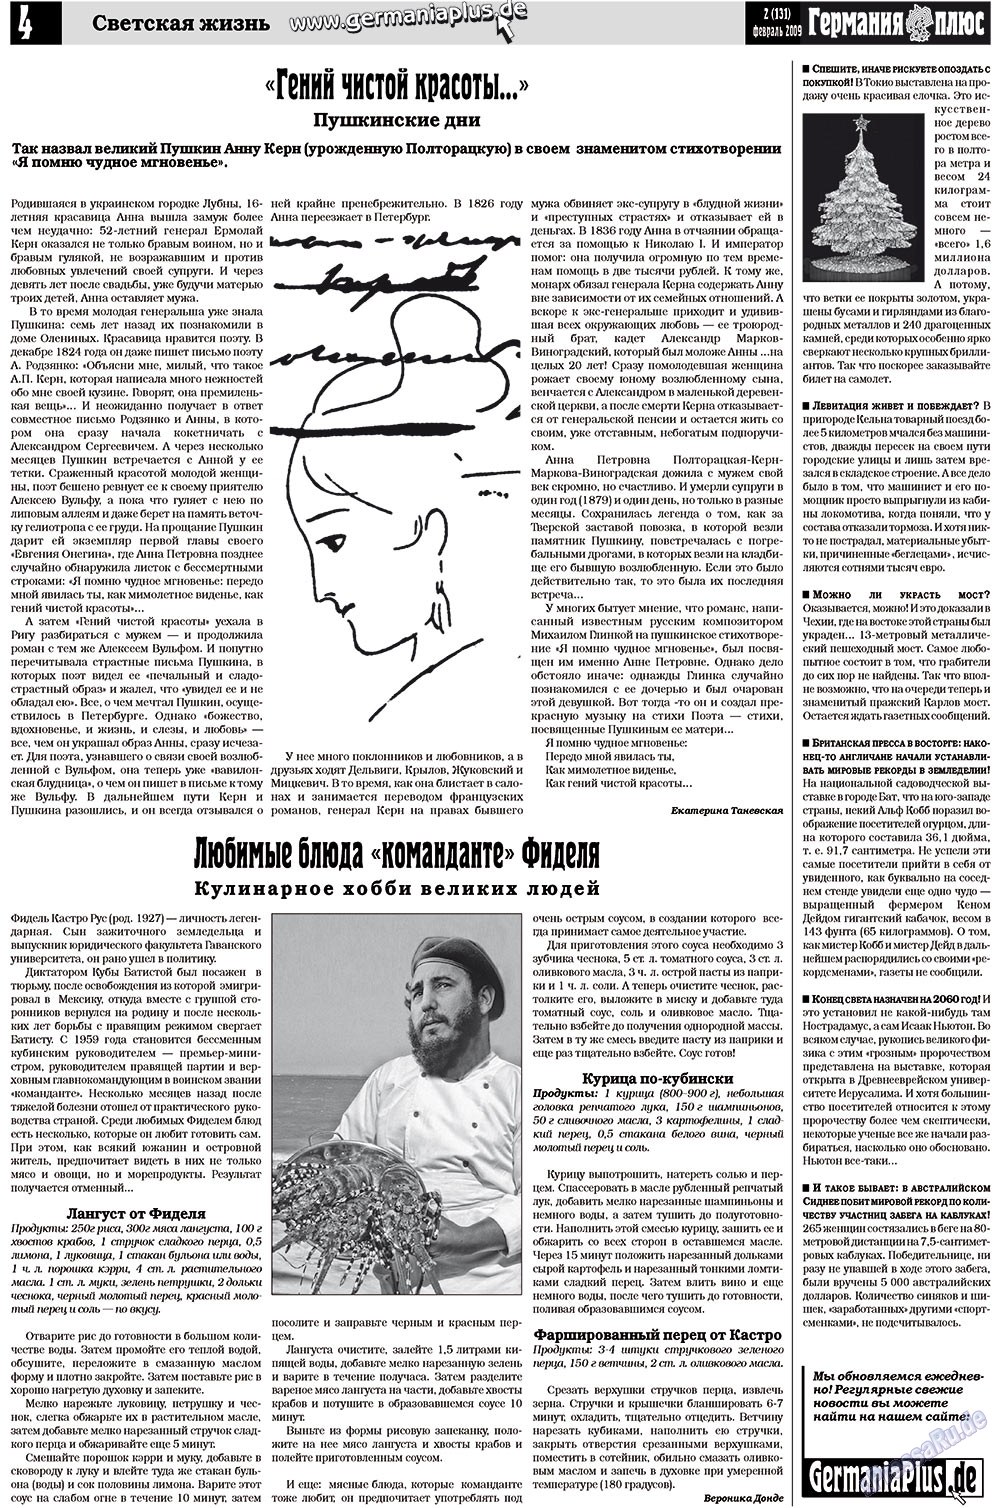 Германия плюс (газета). 2009 год, номер 2, стр. 4